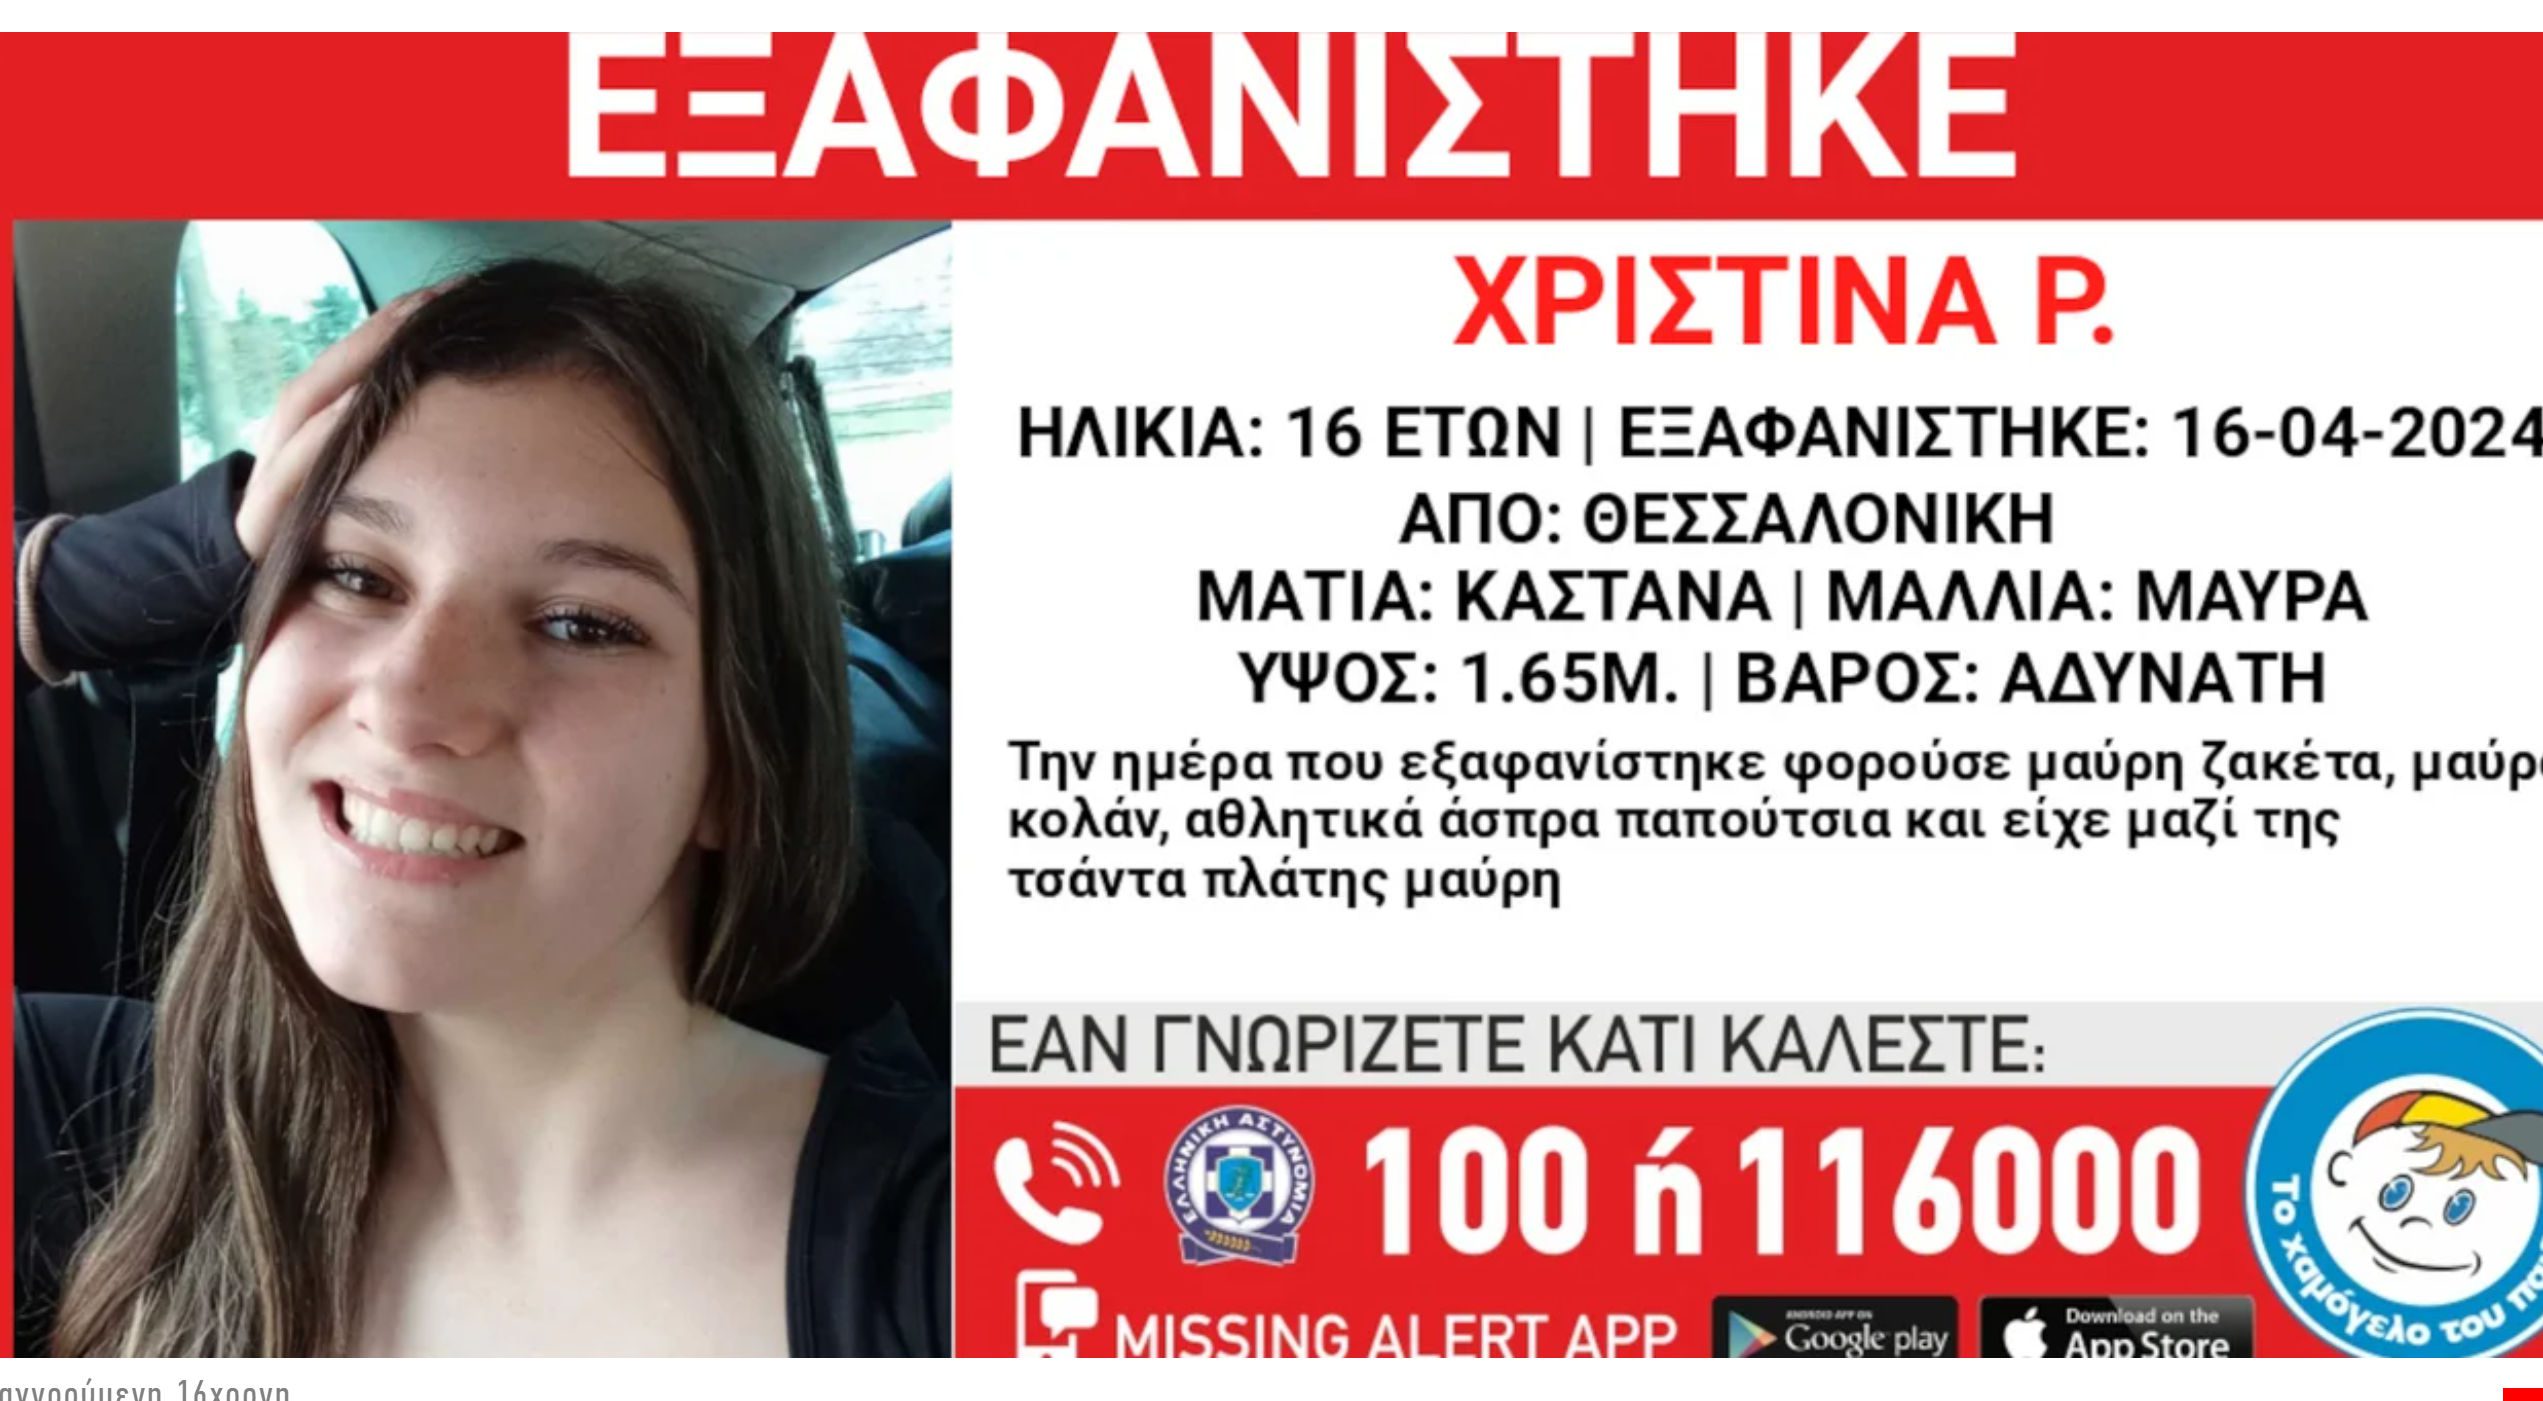 Συναγερμός για εξαφάνιση 16χρονης από δομή παιδικής προστασίας στη Θεσσαλονίκη